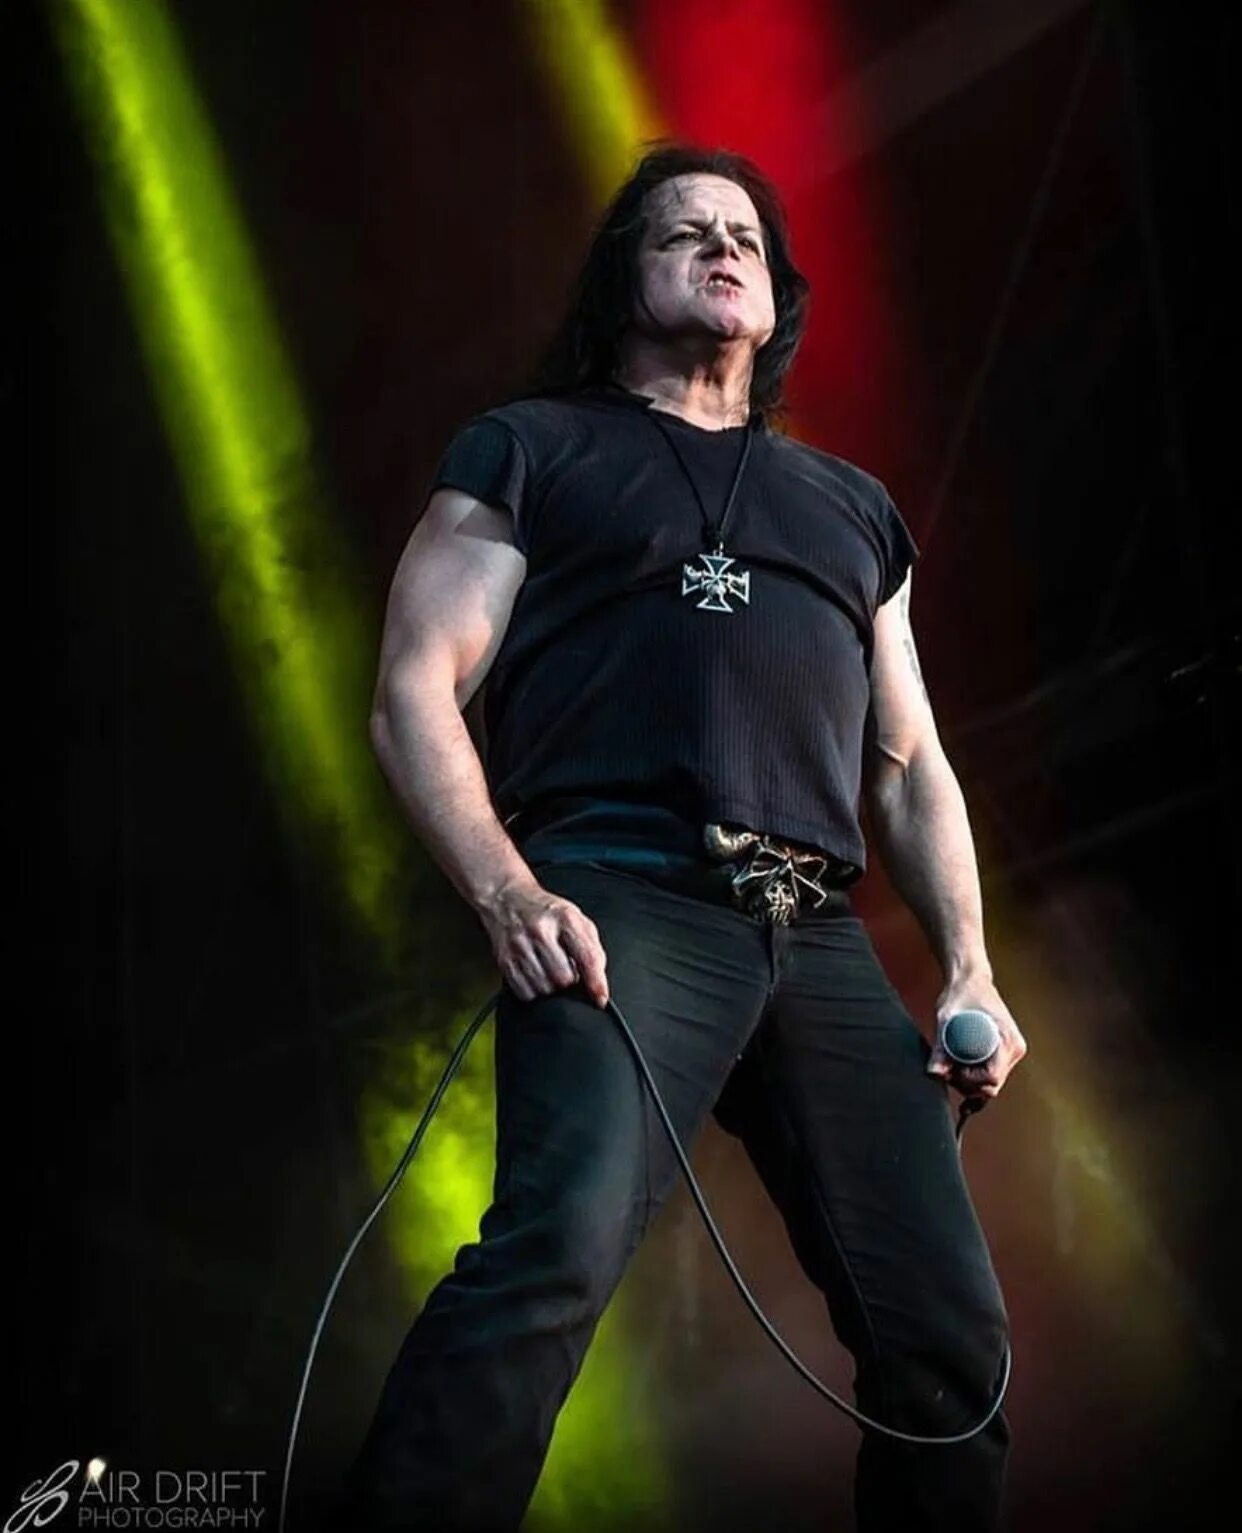 Группа Danzig. Danzig 1992. Danzig группа сейчас. Гленн данциг